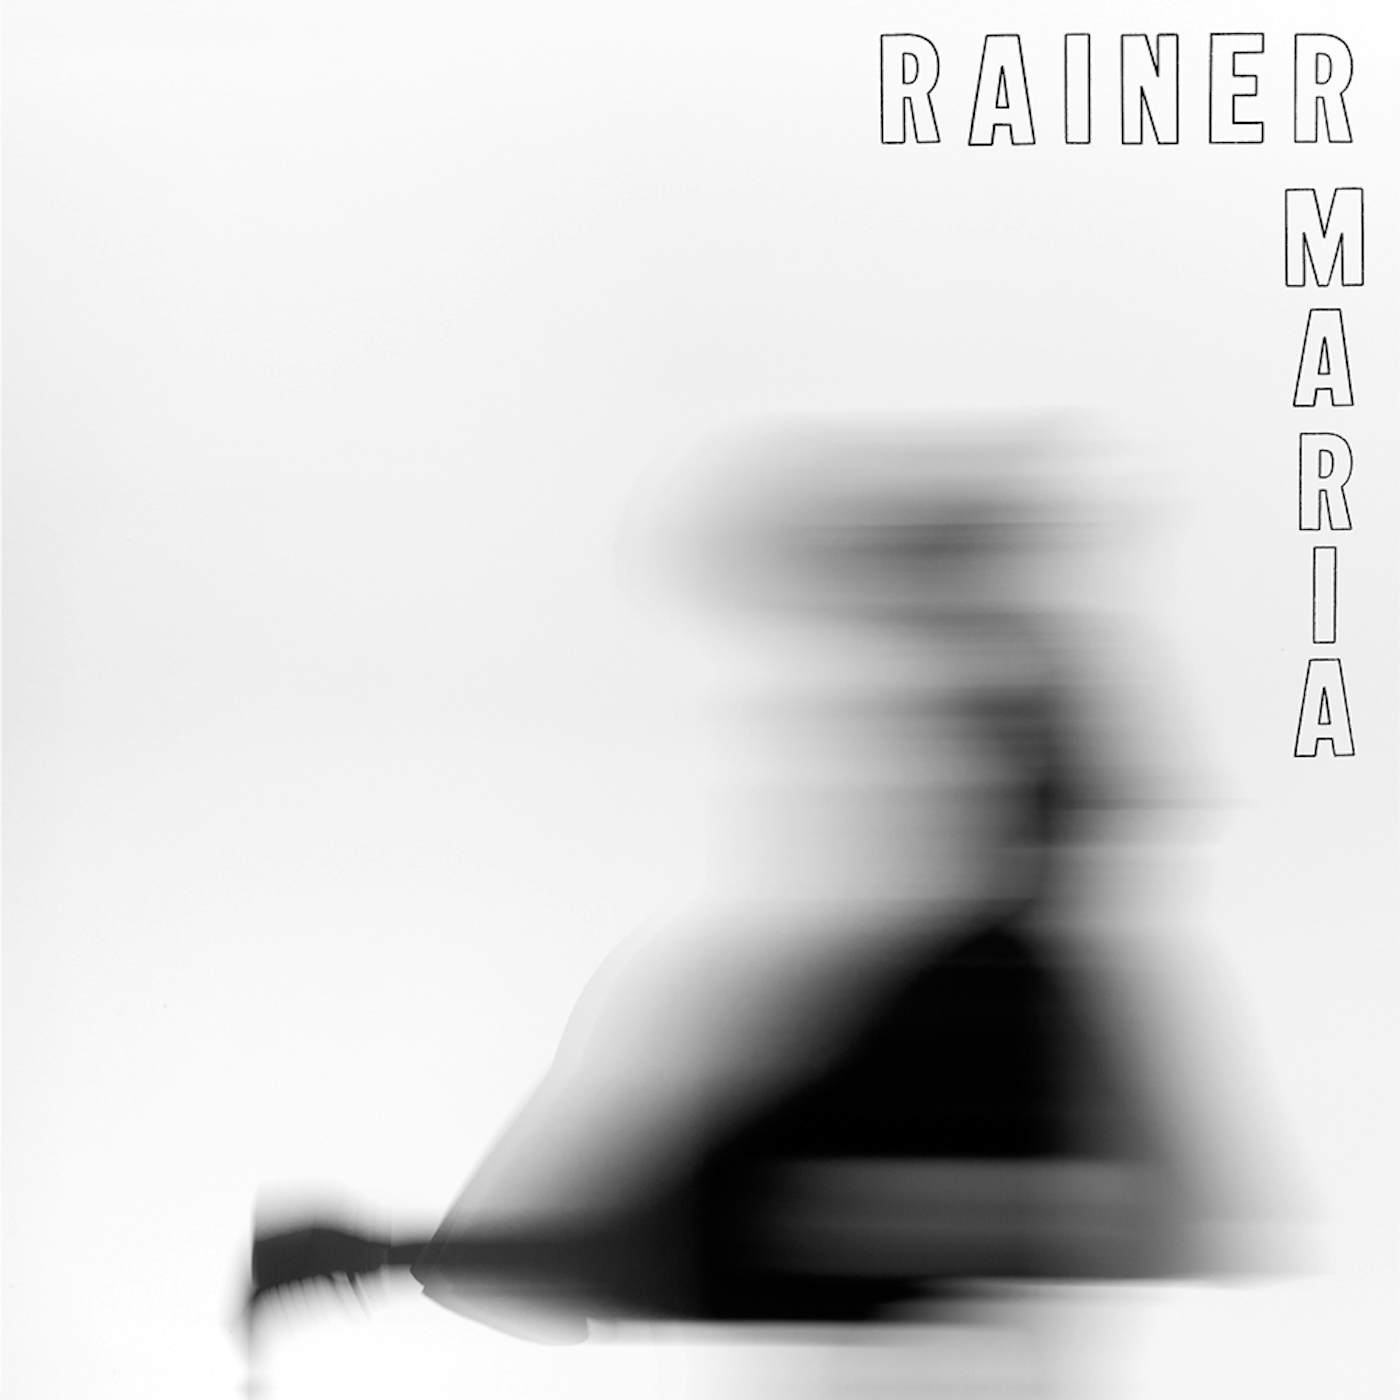 Rainer Maria Vinyl Record